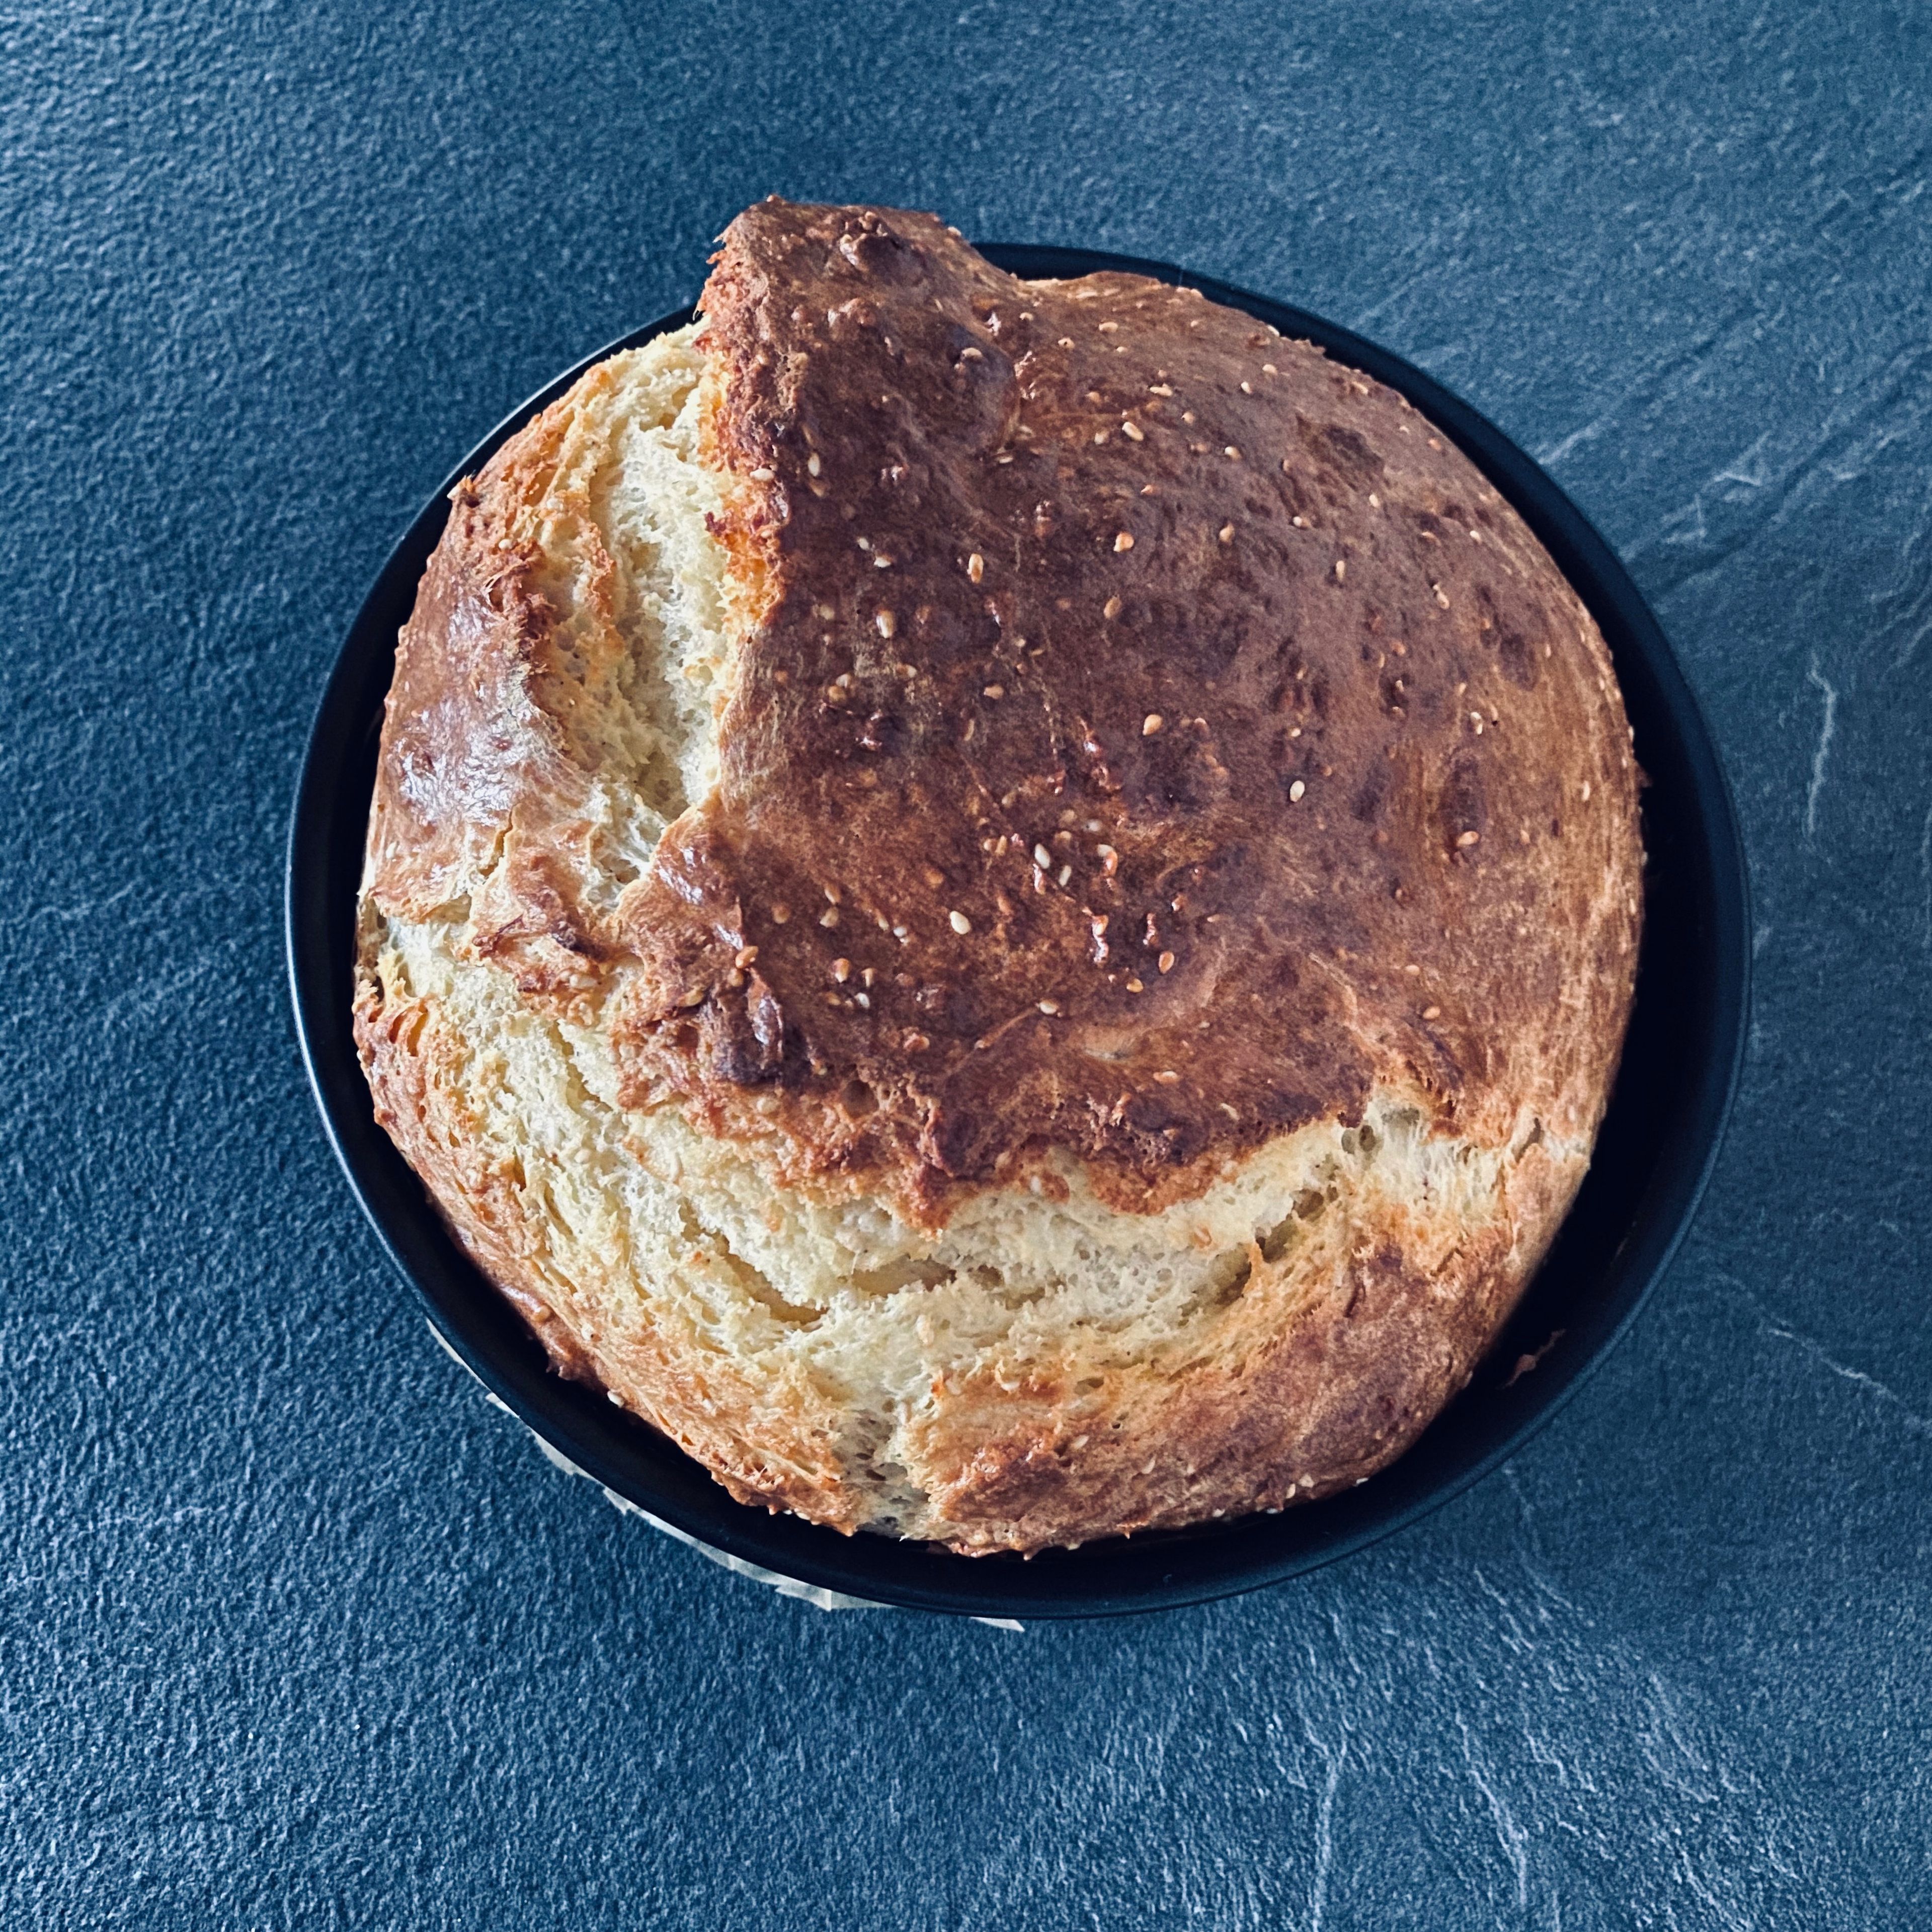 Nach 35-40 Minuten ist euer Brot fertig und ihr könnt es aus dem Ofen nehmen. Lasst es noch ein wenig in der Form abkühlen. Nun könnt ihr es in Scheiben schneiden, dick oder dünn, wie er mögt und nach Belieben belegen - eignet sich auch super zum Dippen! Guten Appetit! 🌸